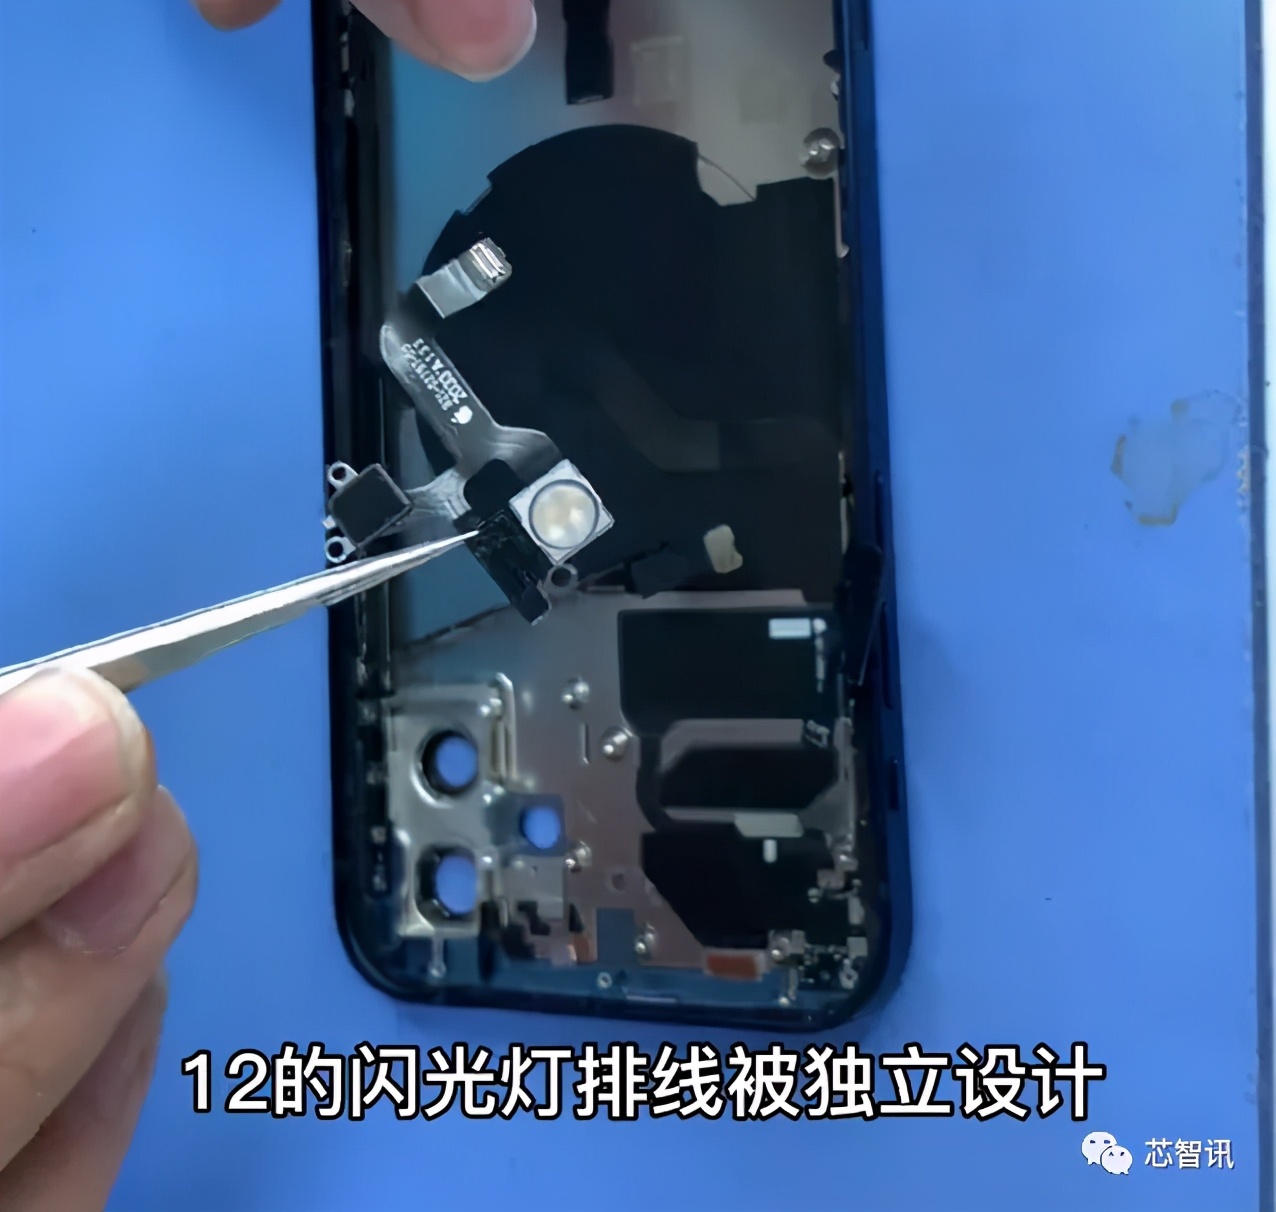 苹果iPhone 12拆解：确认采用高通骁龙X55基带芯片